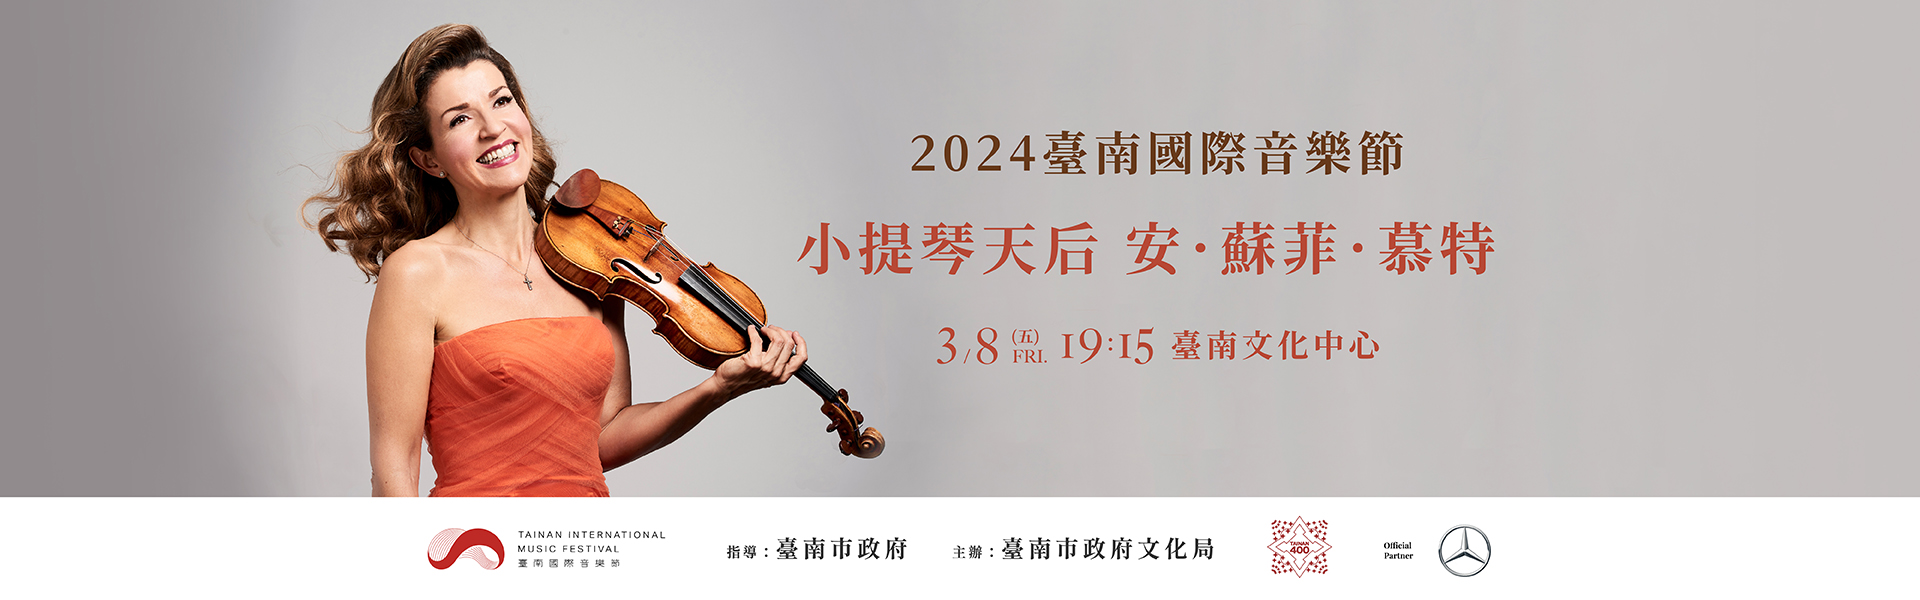 臺南400 x 2024臺南國際音樂節:安-蘇菲．慕特